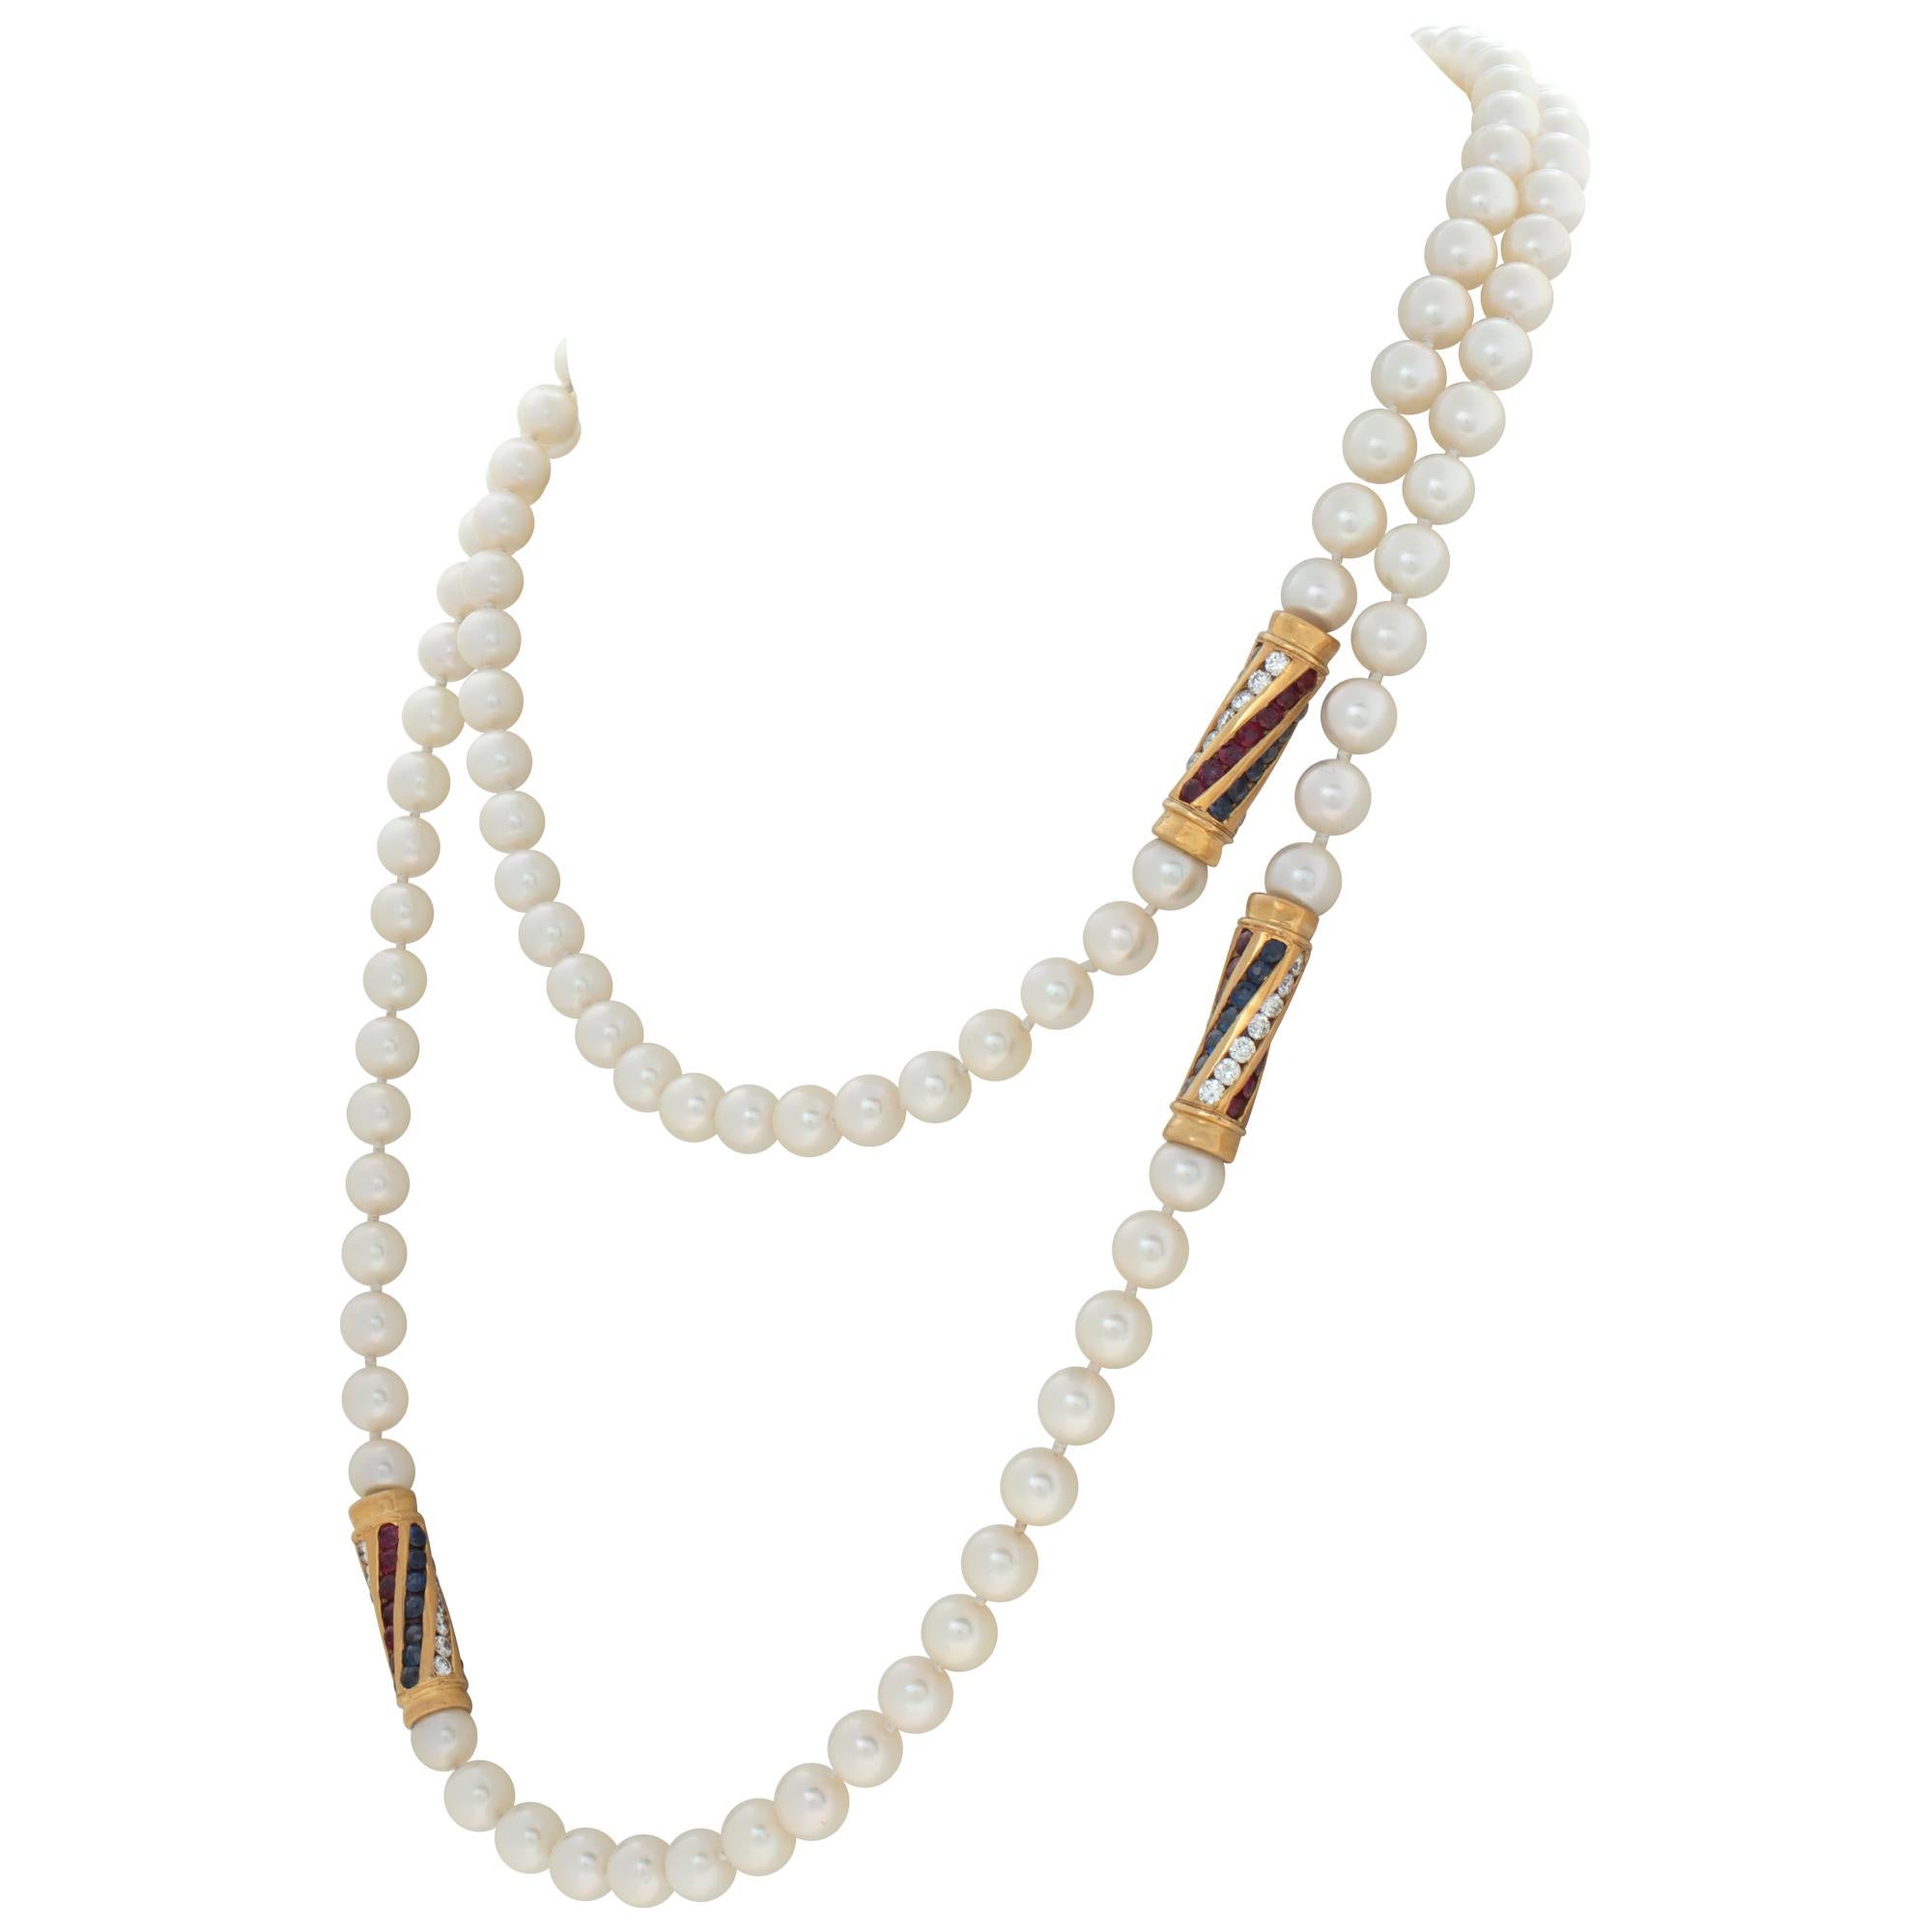 Collier en perles d'Akoya de 6 x 6,5 mm avec quatre stations en or serties de diamants, de rubis et de saphirs en or jaune 18 carats pour compléter le look glamour. Les diamants pèsent environ 2 carats, de couleur G-H et de pureté VS. Le collier a